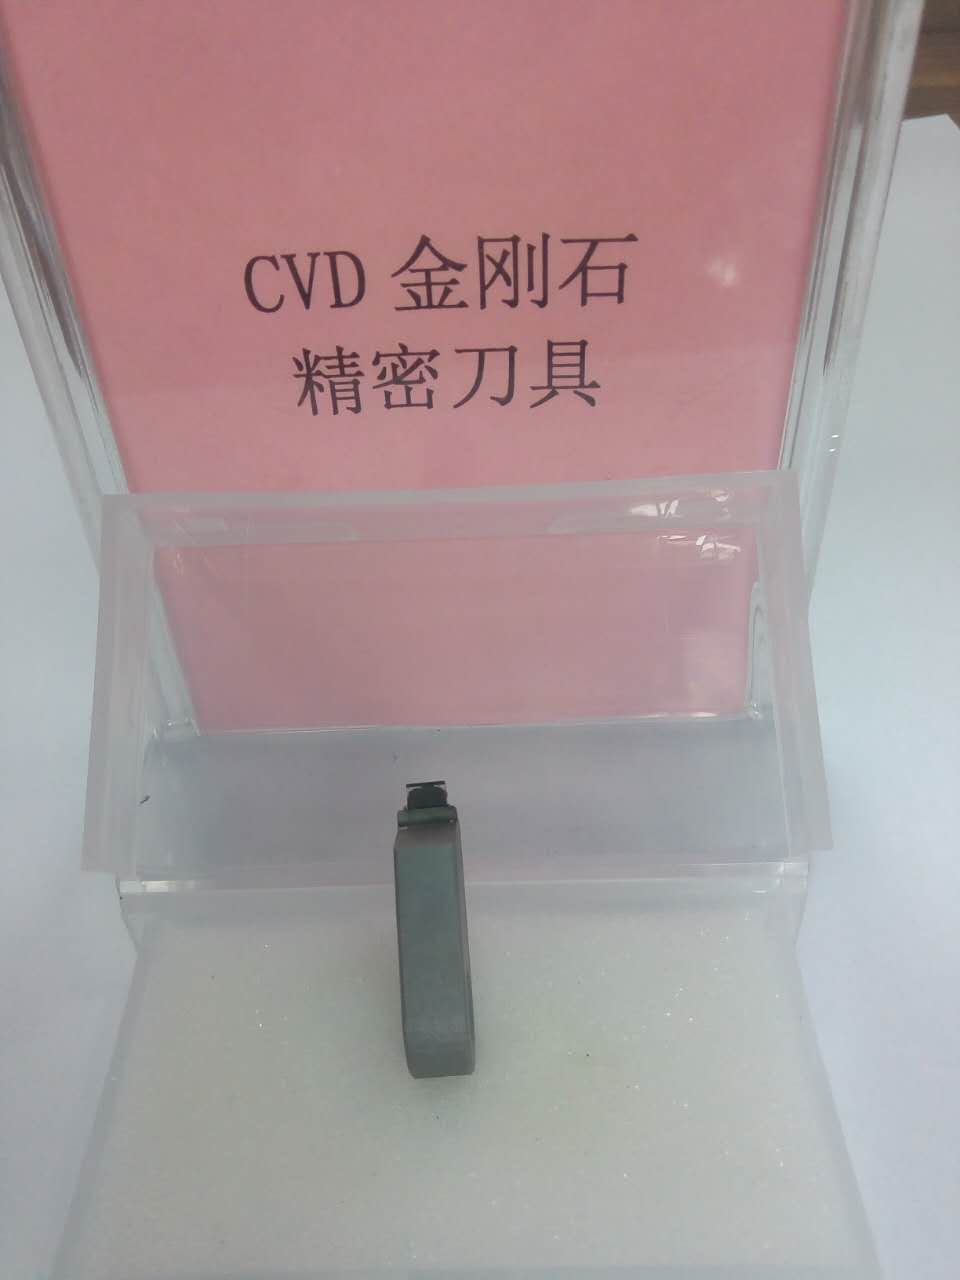 CVD单晶金刚石2